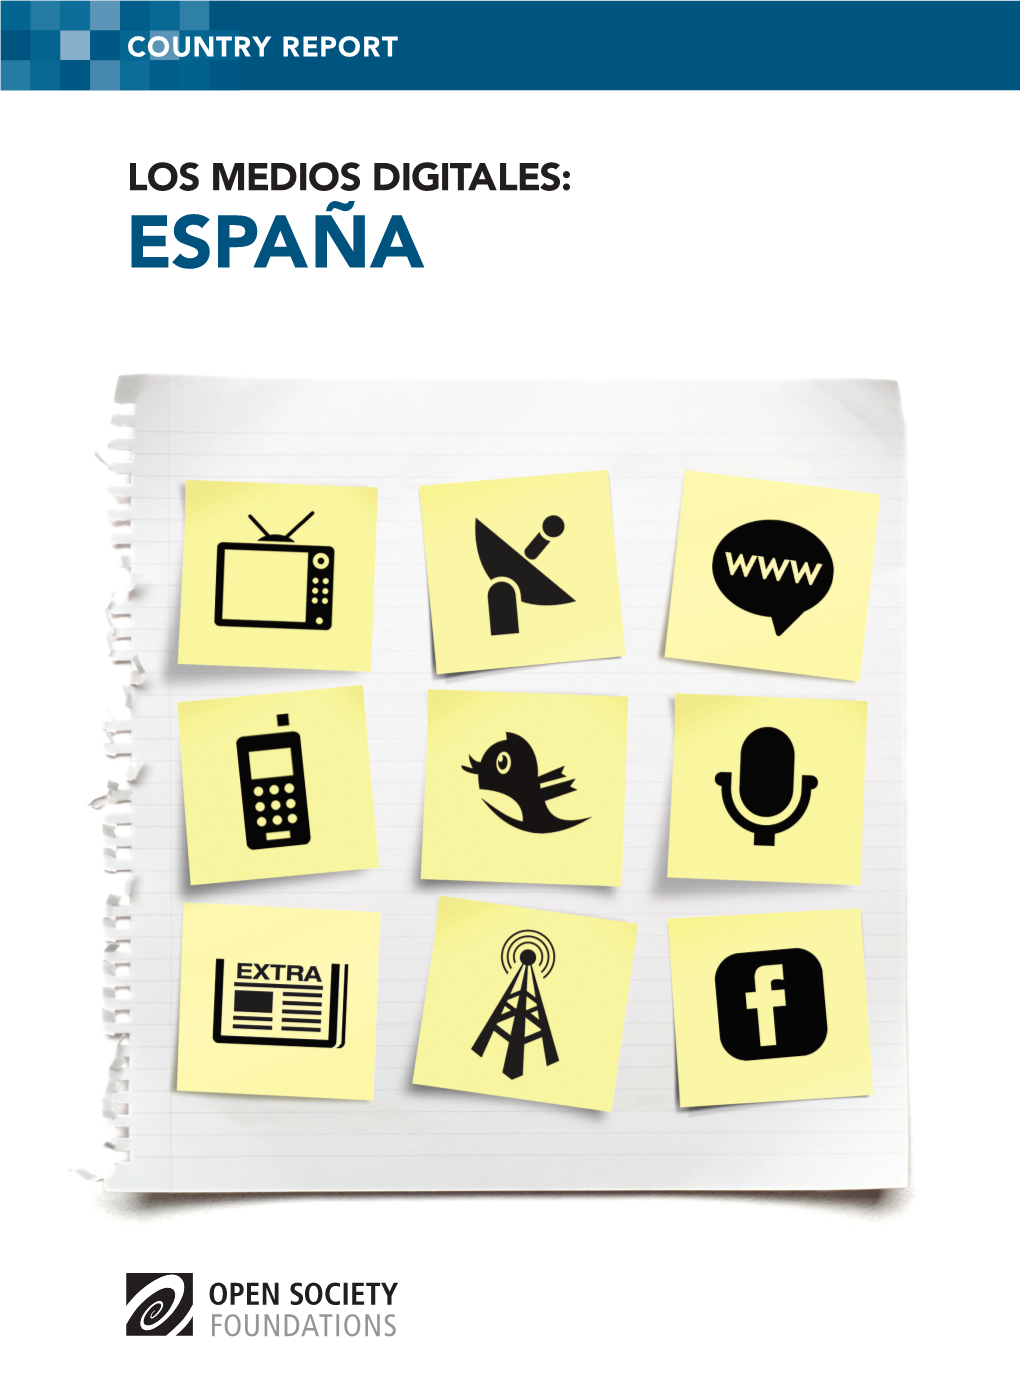 Los Medios Digitales: España